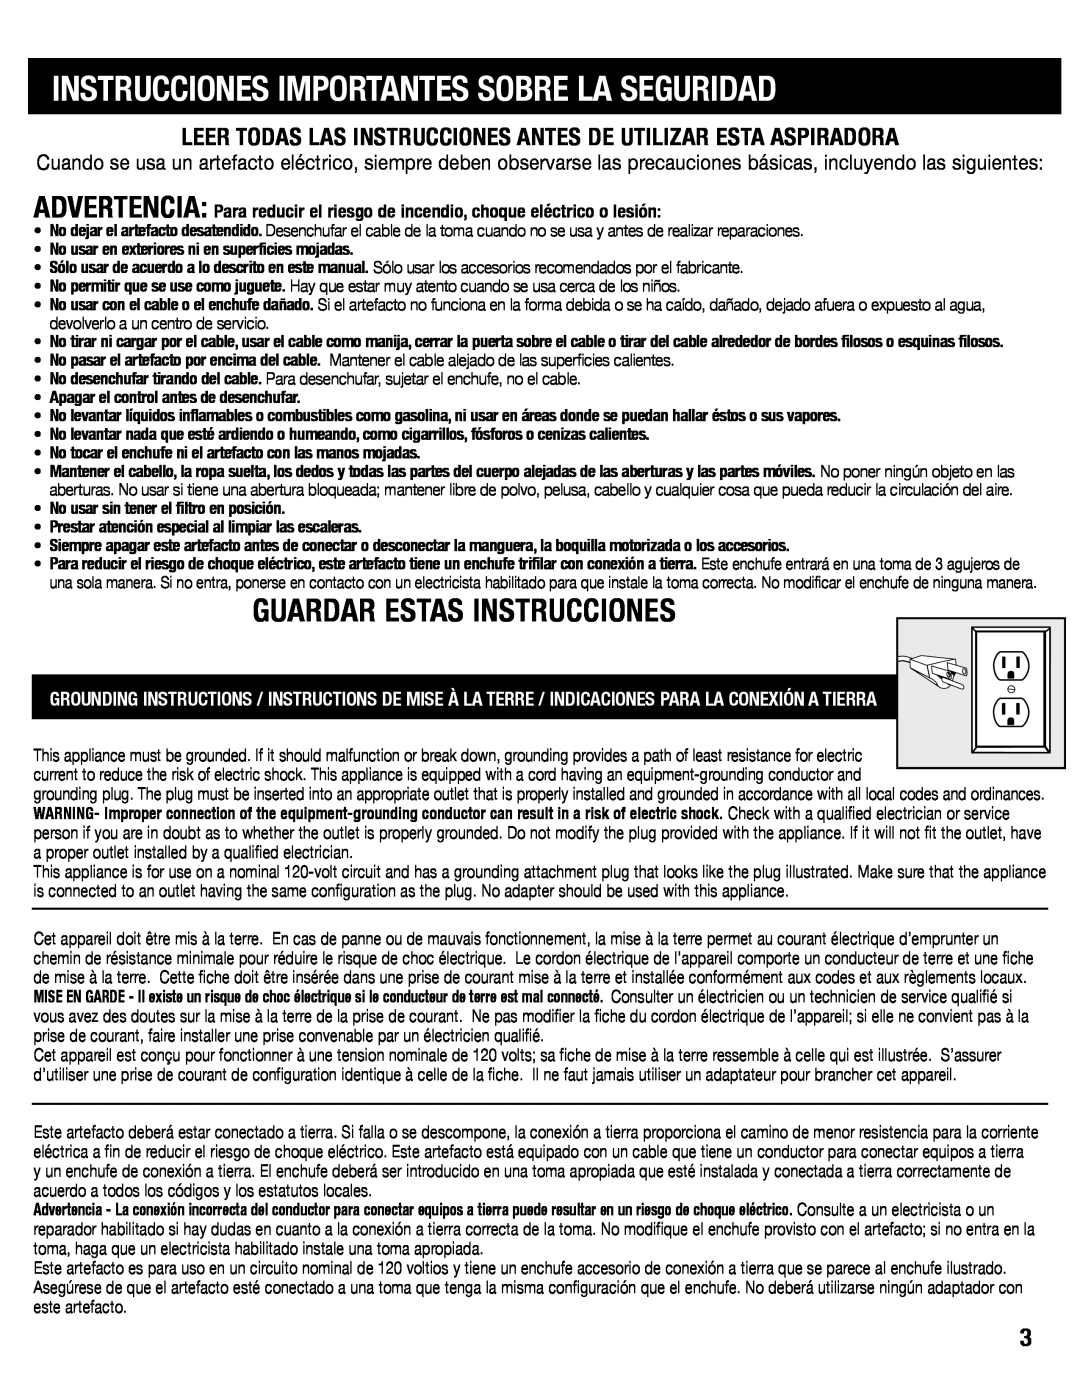 Sanitaire SC6600 manual Instrucciones Importantes Sobre La Seguridad, Guardar Estas Instrucciones 